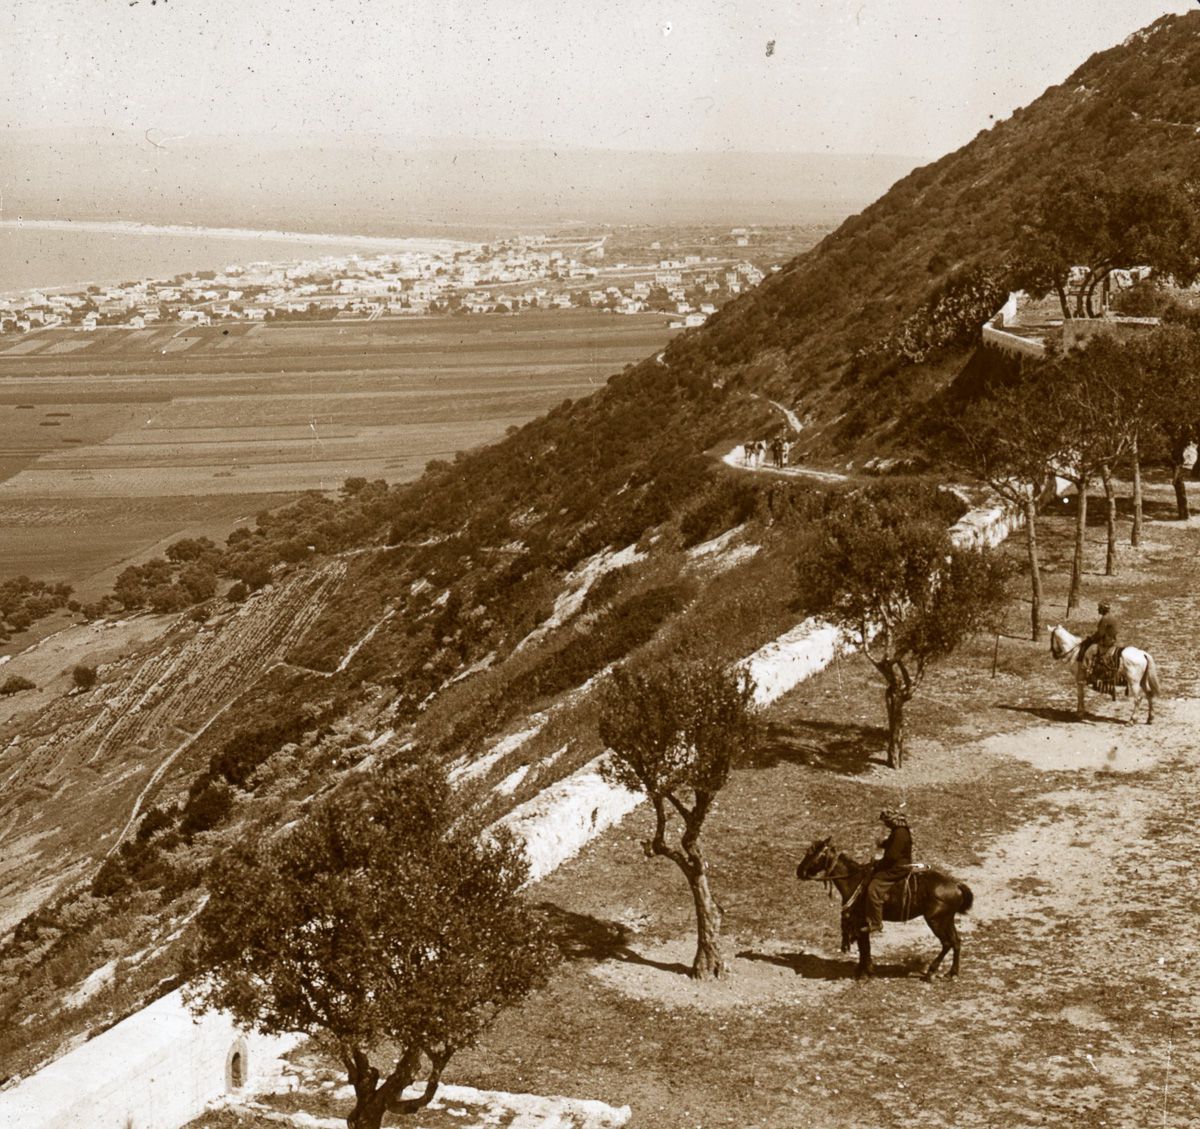 Mount Carmel and the Bay of Haifa.